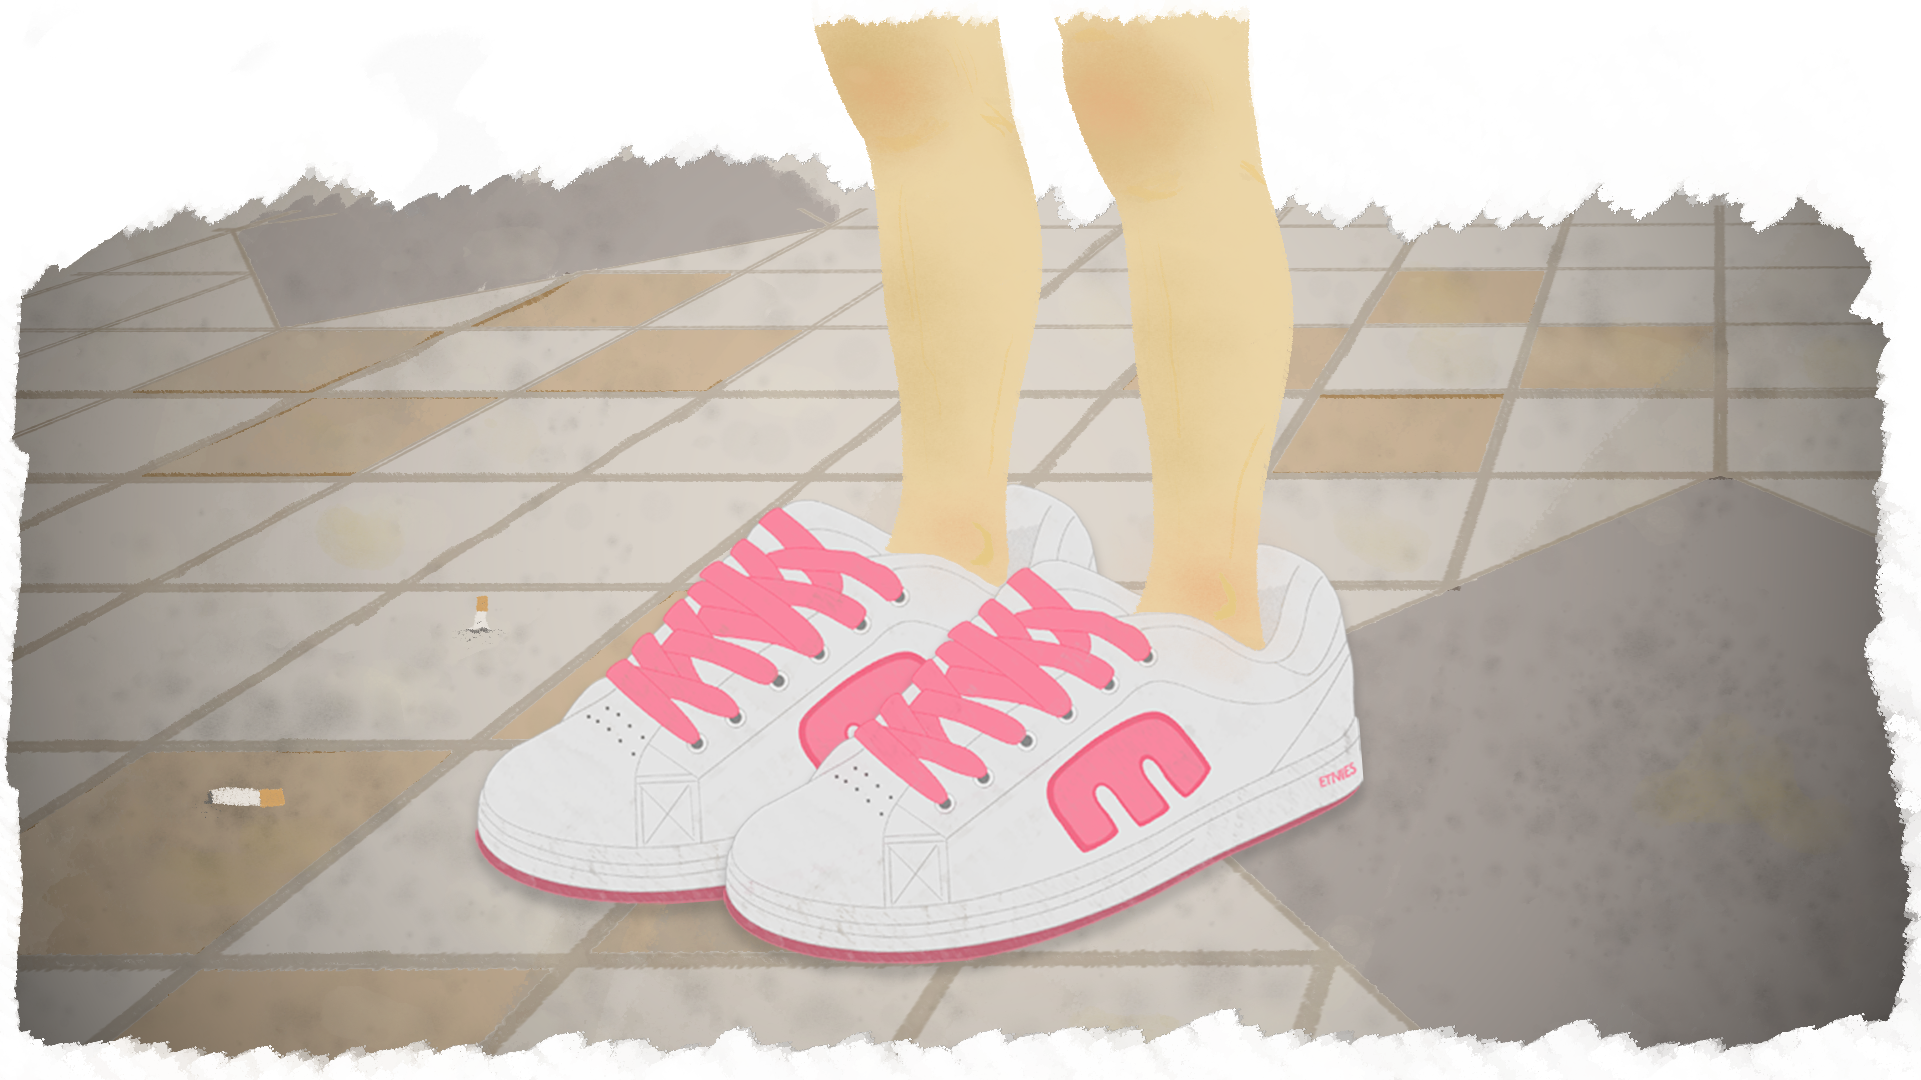 girls wearing skate shoes